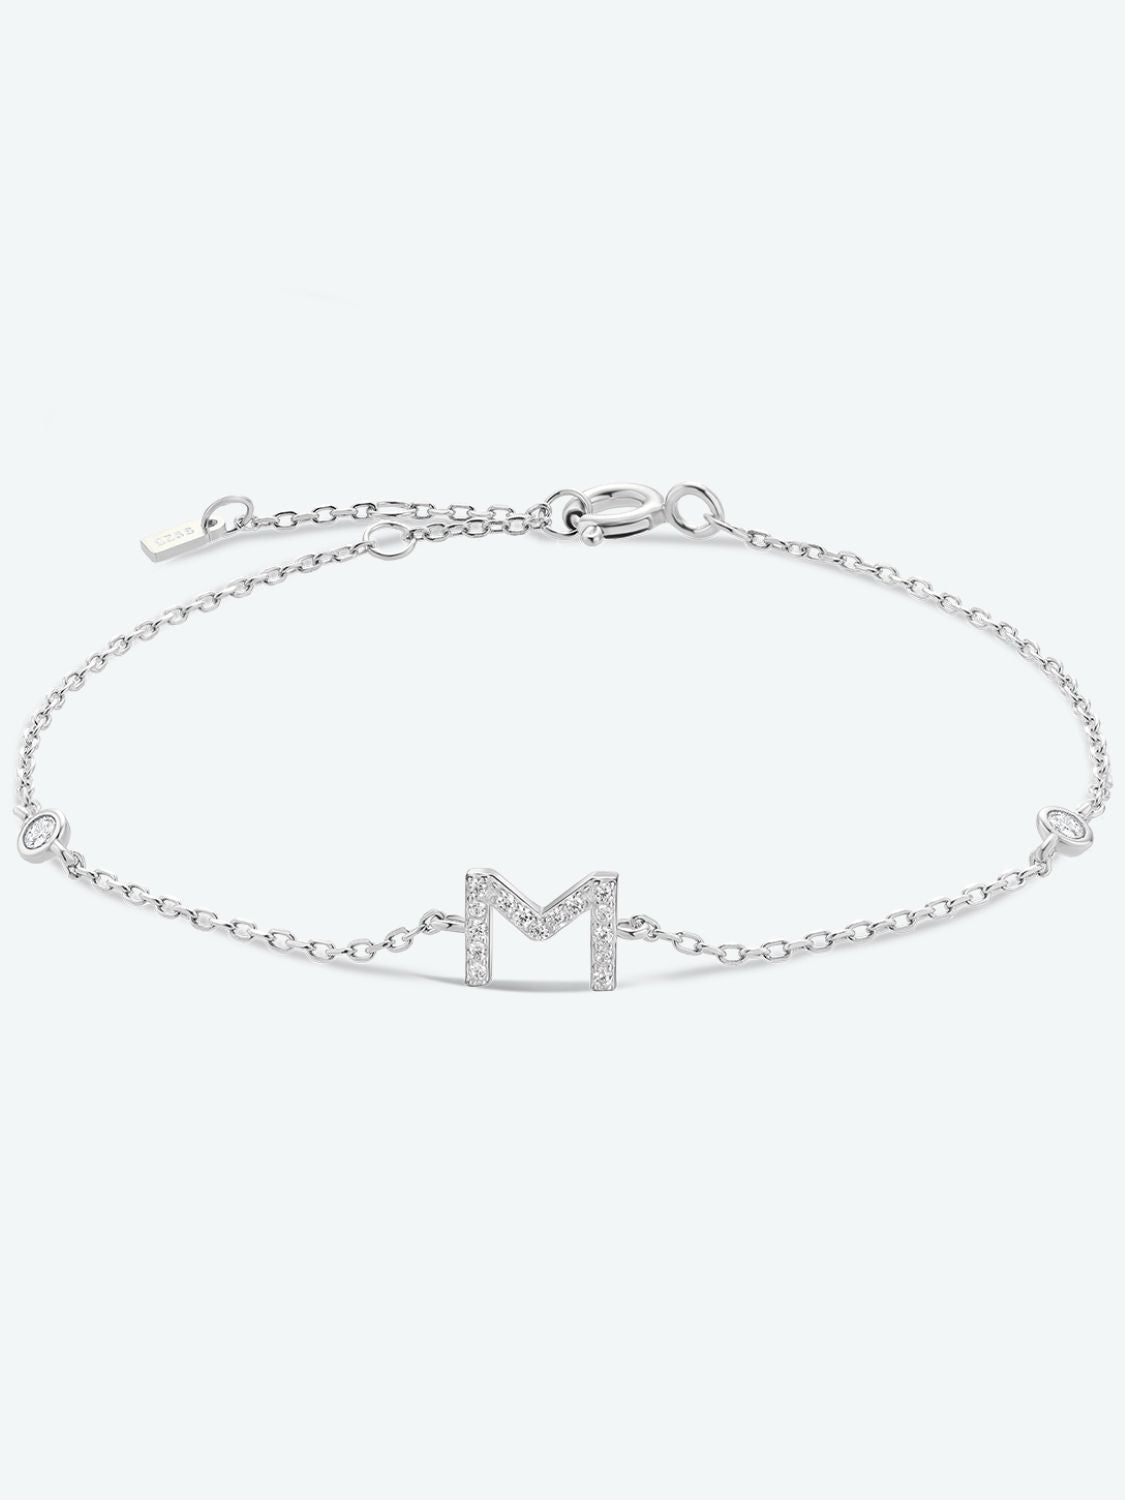 L To P Zircon 925 Sterling Silver Bracelet - M-Silver / One Size - Women’s Jewelry - Bracelets - 10 - 2024